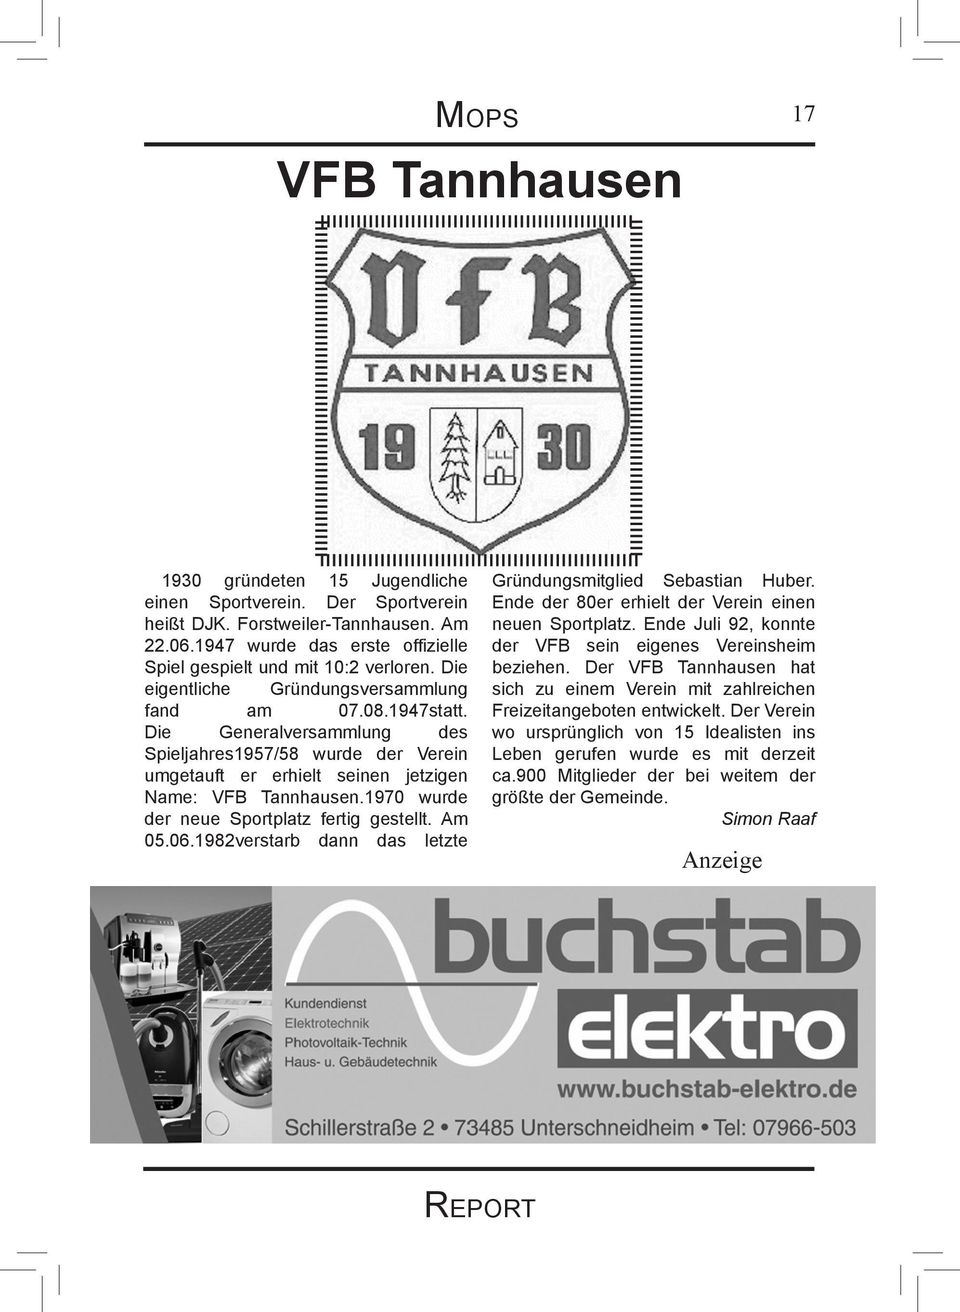 Die Generalversammlung des Spieljahres1957/58 wurde der Verein umgetauft er erhielt seinen jetzigen Name: VFB Tannhausen.1970 wurde der neue Sportplatz fertig gestellt. Am 05.06.